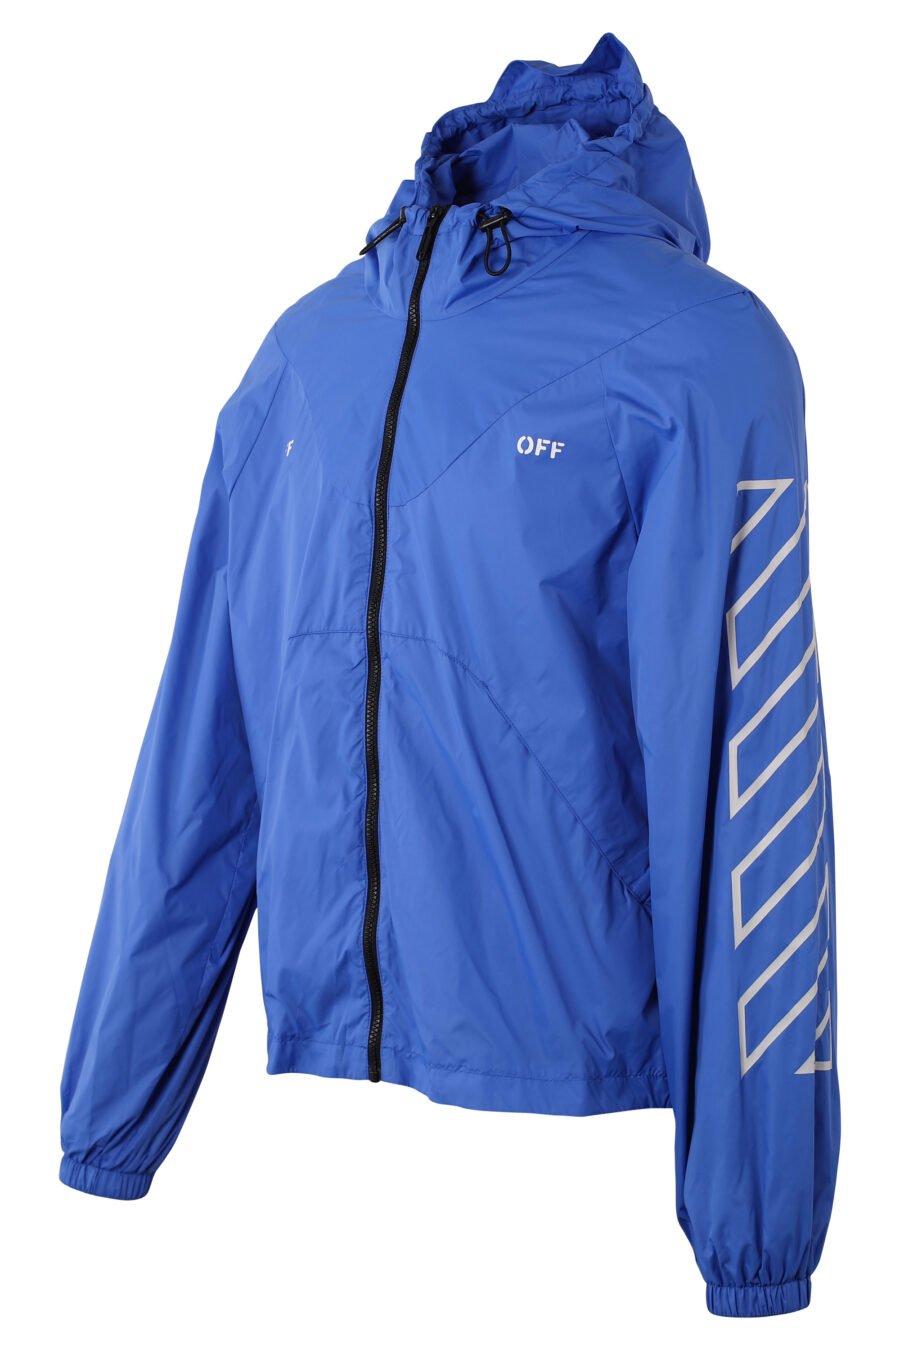 Blue jacket with white "Diagonals" logo - IMG 1560